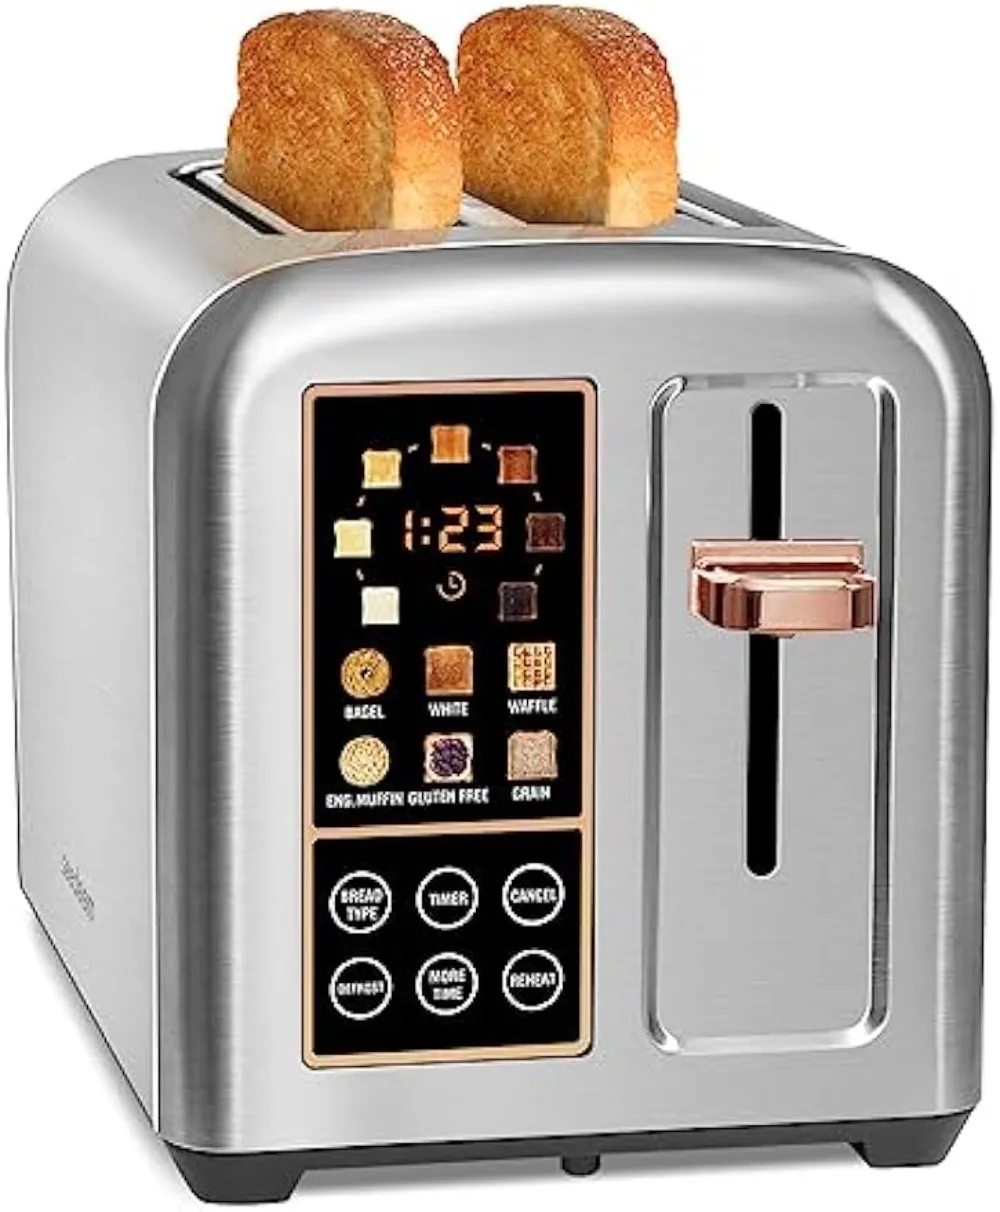 

Тостер с 2 ломтиками, тостер для хлеба из нержавеющей стали с сенсорным ЖК-дисплеем, скорость нагрева на 50%, тостер с очень широкими слотами 1,4 дюйма